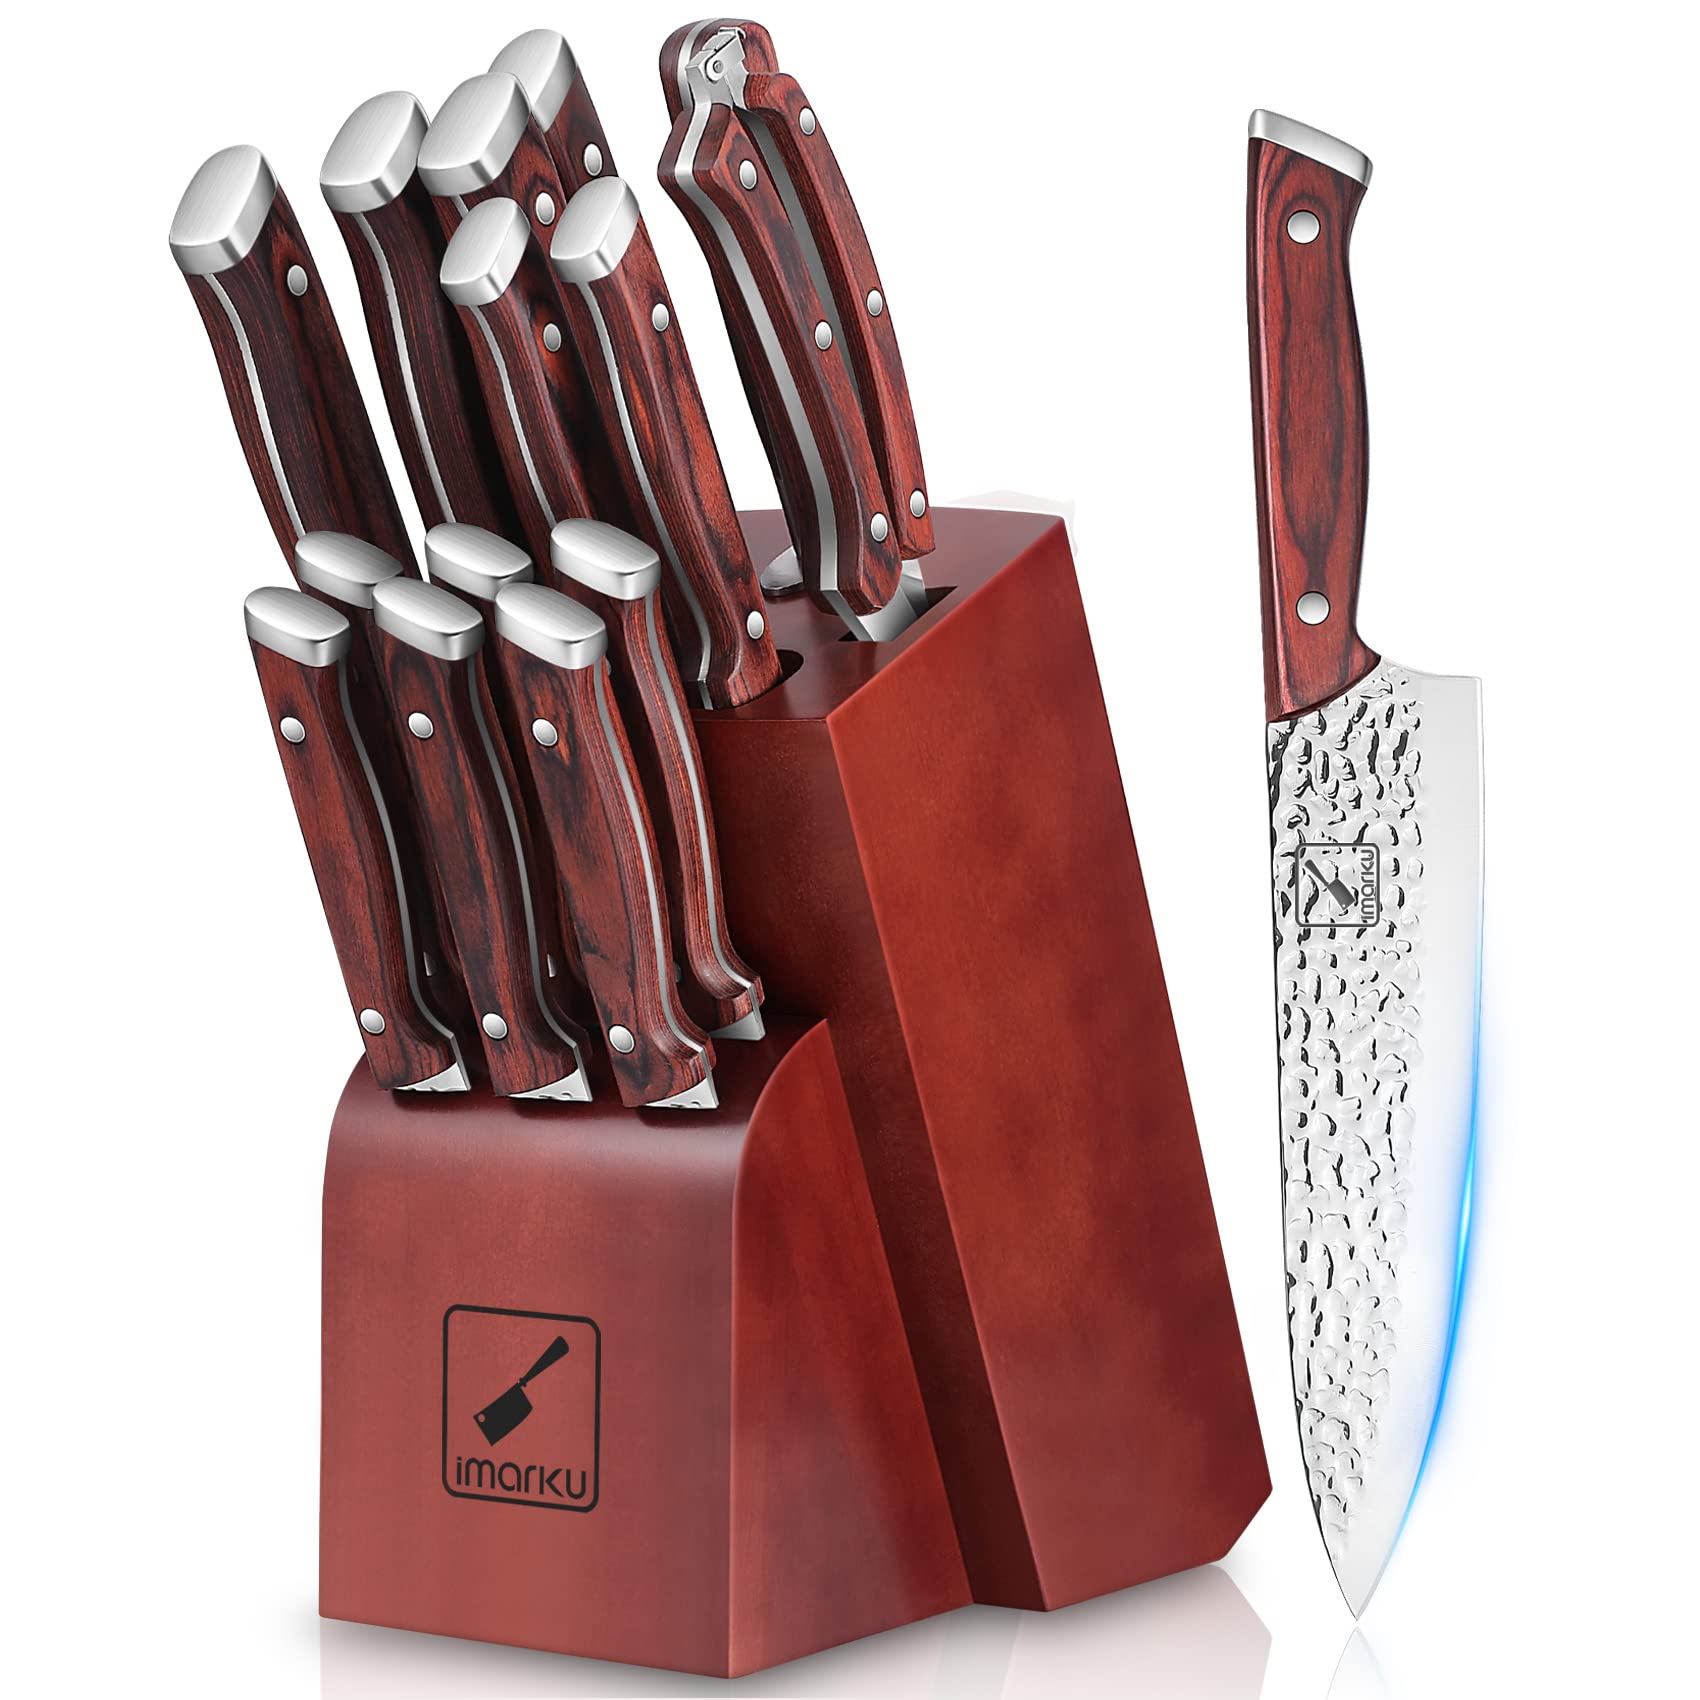 Deadpool Knife Holder for Kitchen storage